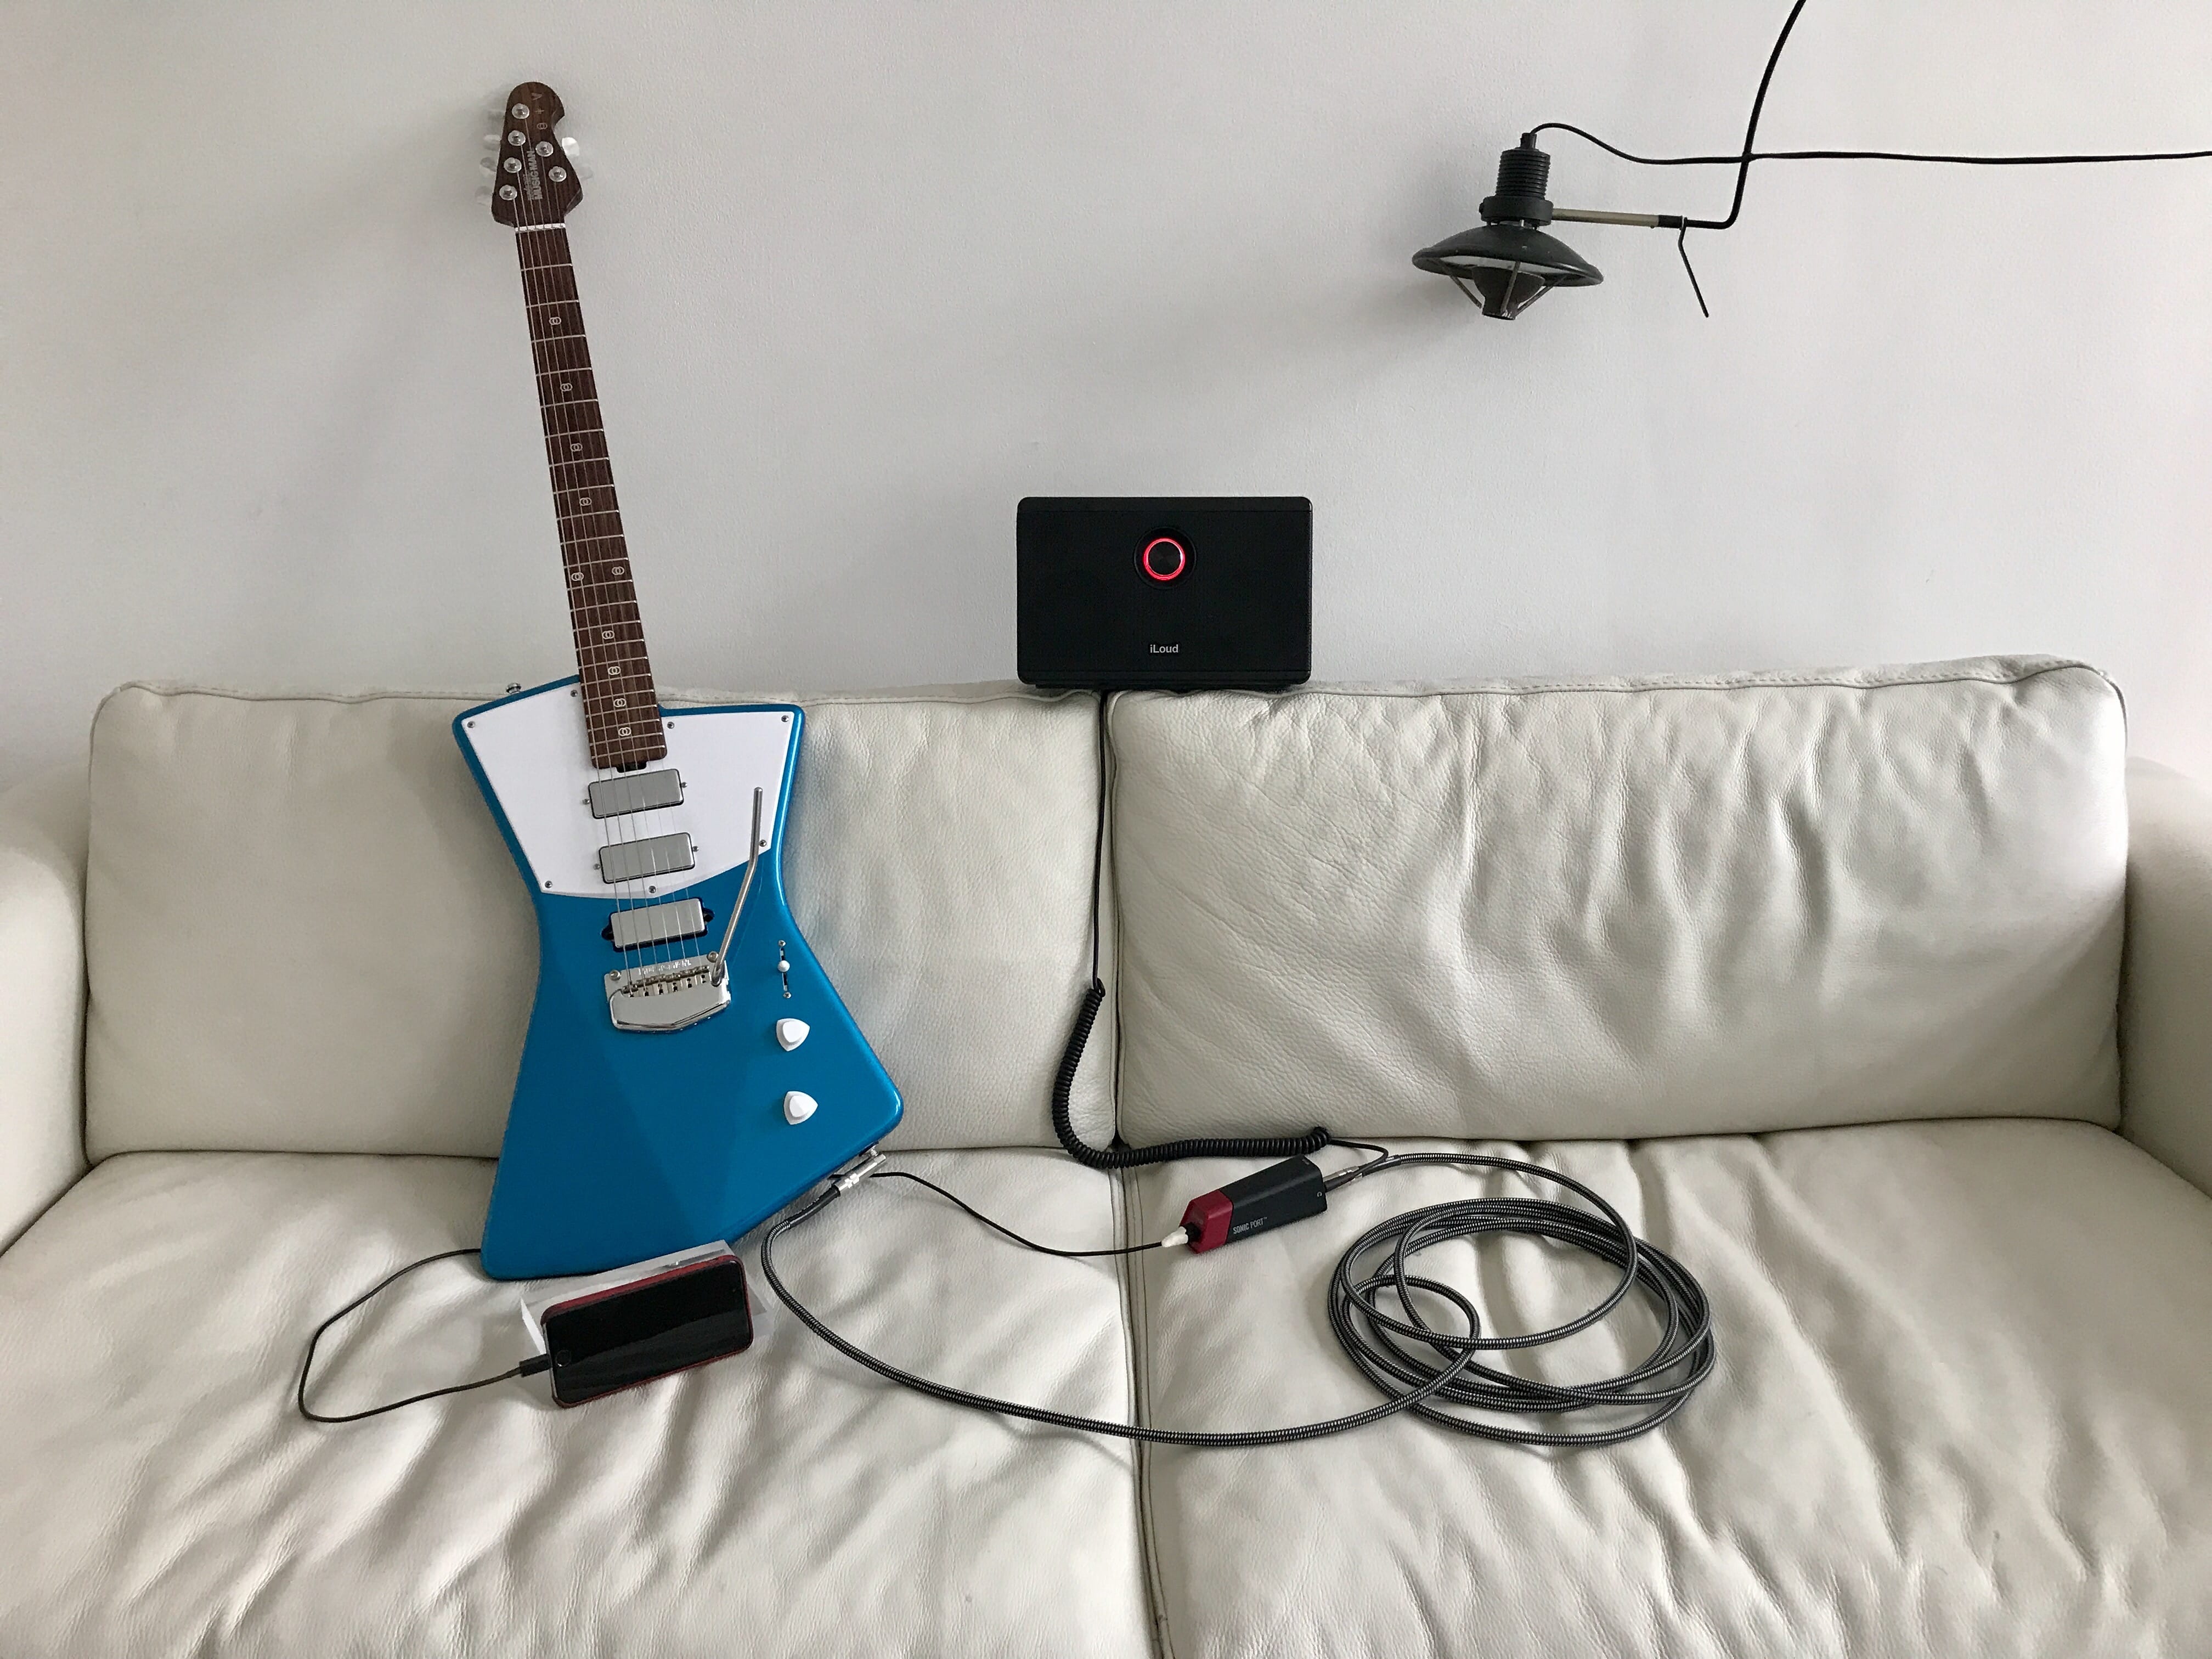 guitar iPhone setup